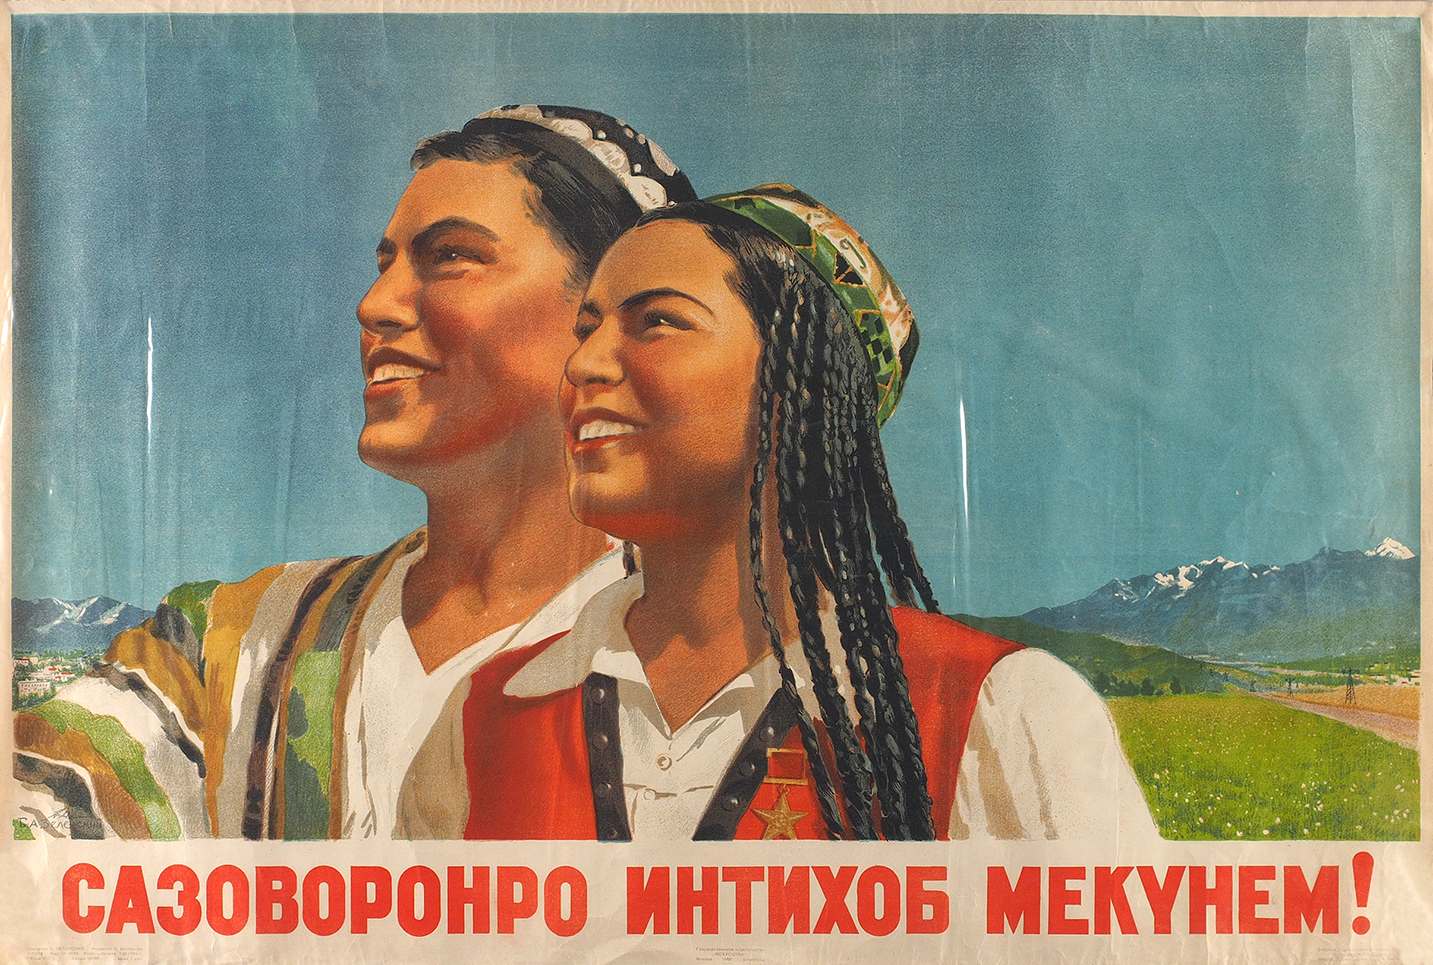 Поздравление с днем рождения на таджикском. Таджикистан ССР плакаты. Таджикская ССР на советских плакатах. Советские плакаты Узбекистан. Советские плакаты Таджикистана.